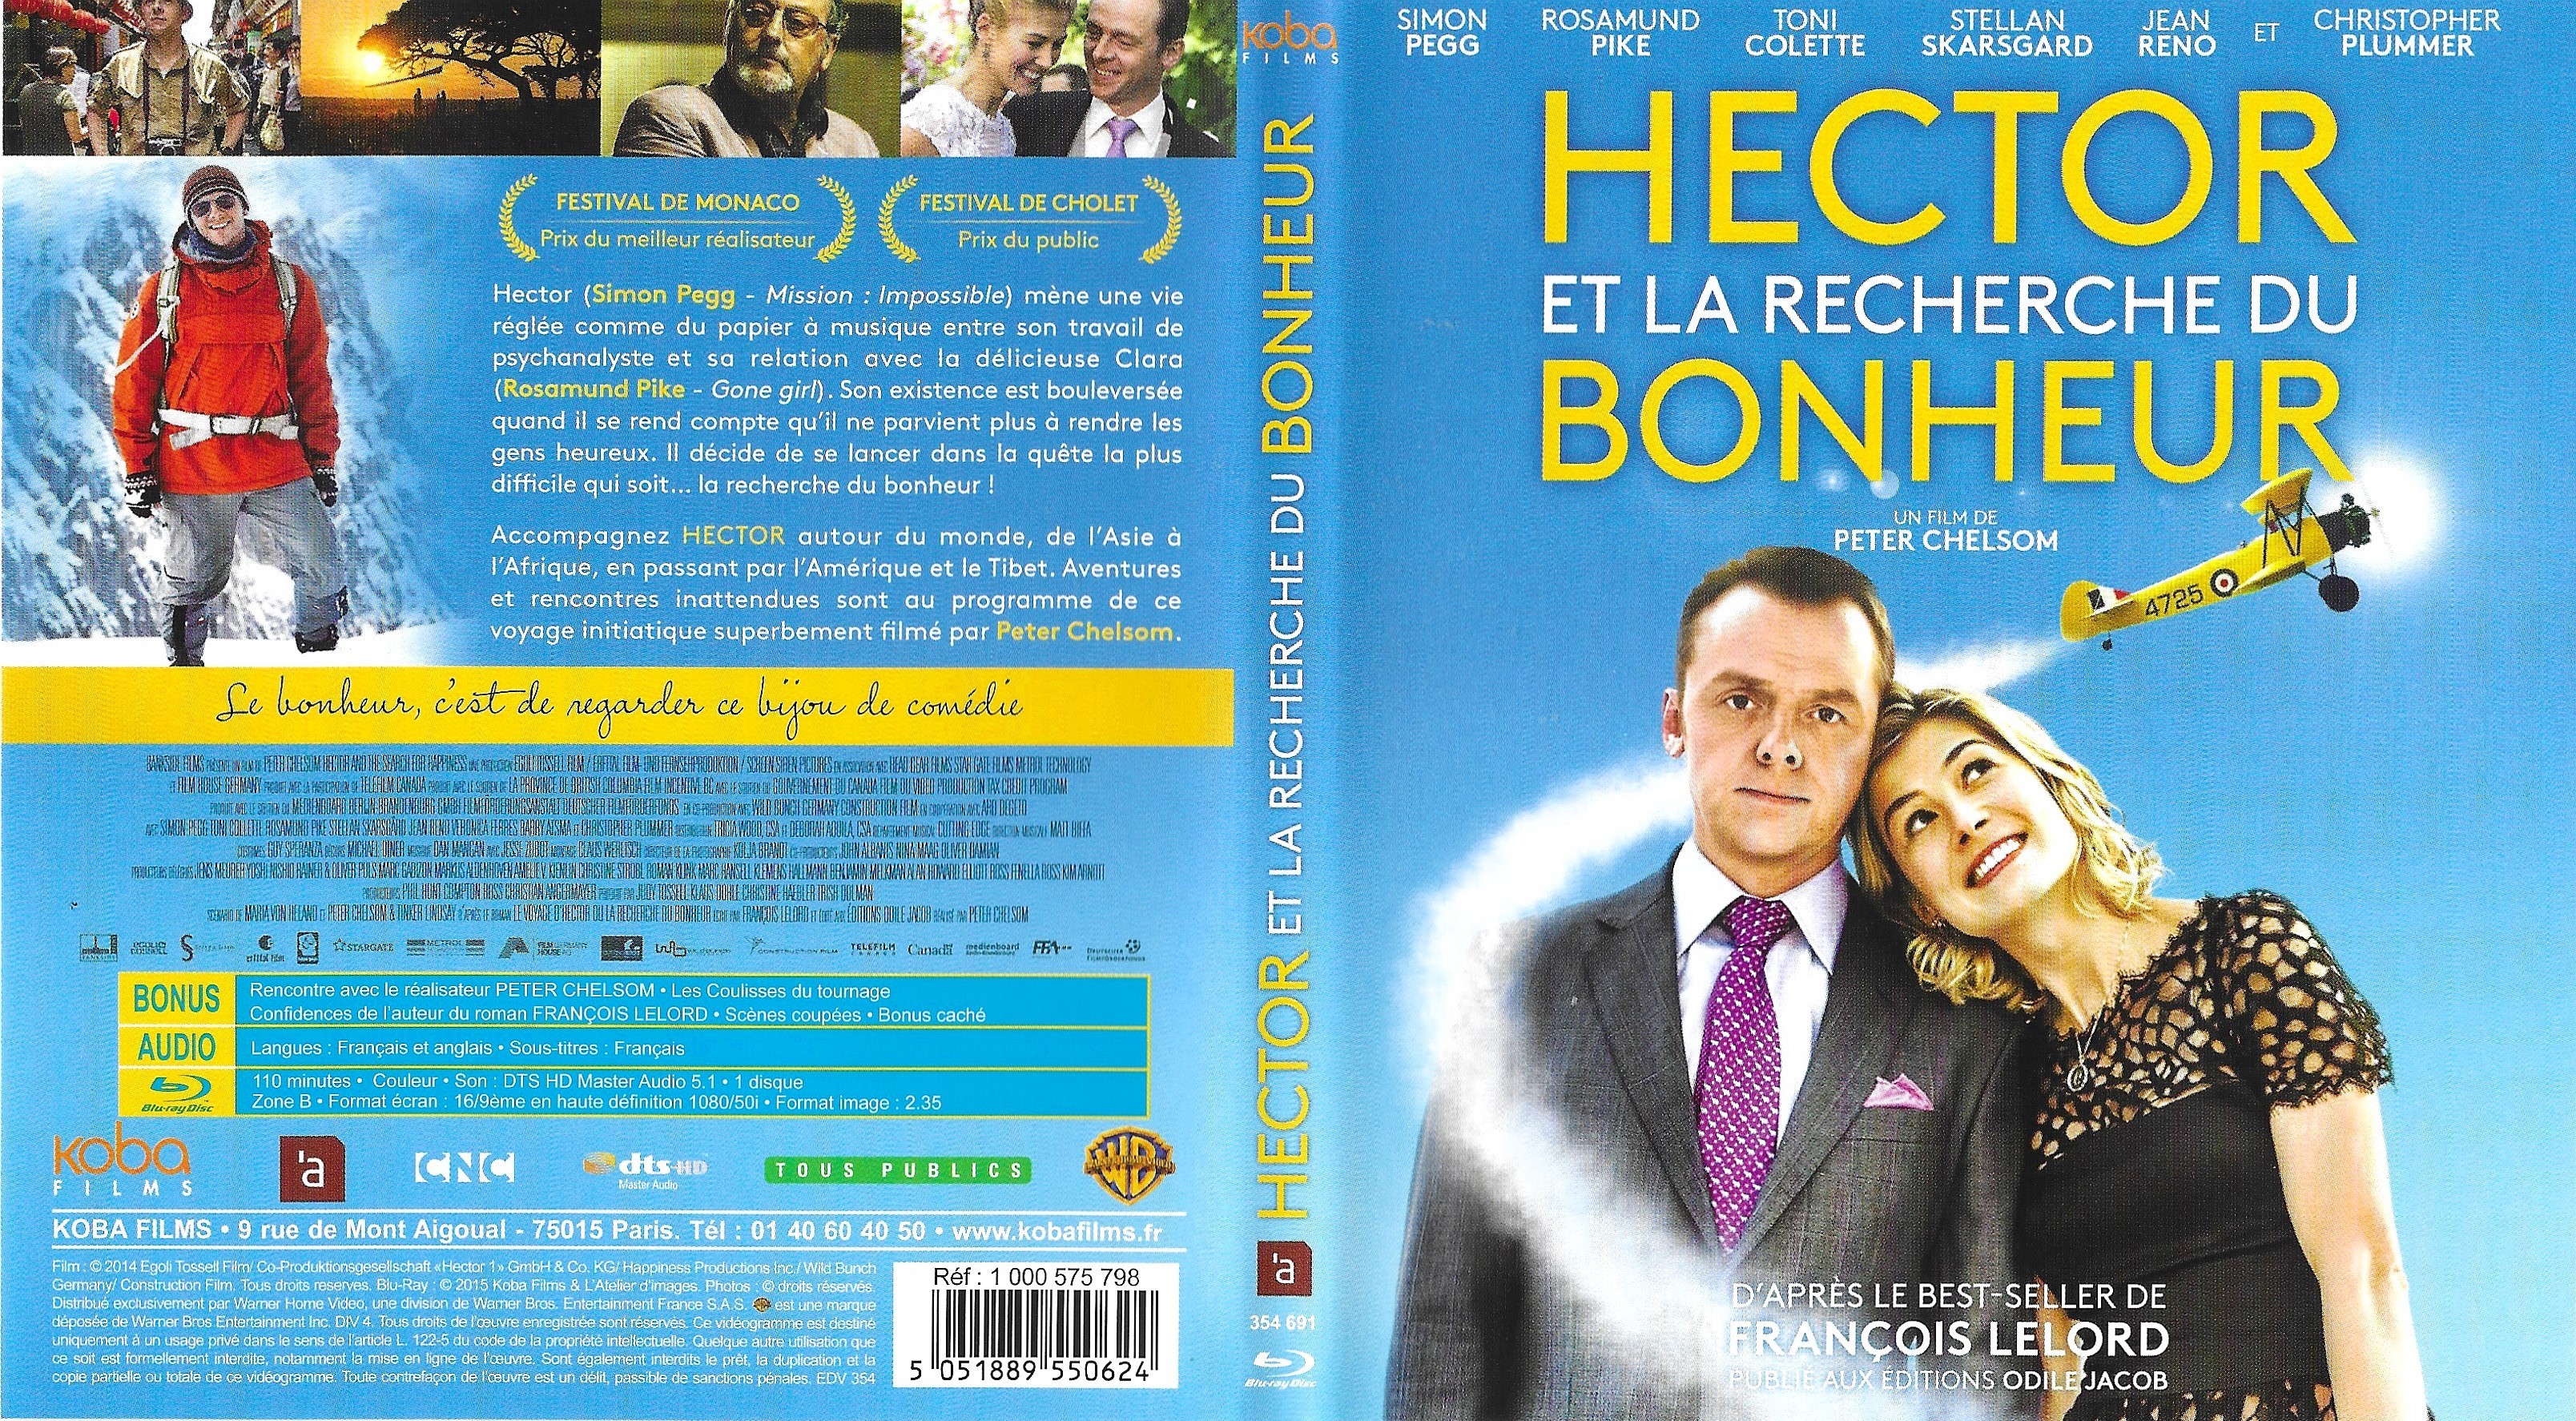 Jaquette DVD Hector et la recherche du bonheur (BLU-RAY)